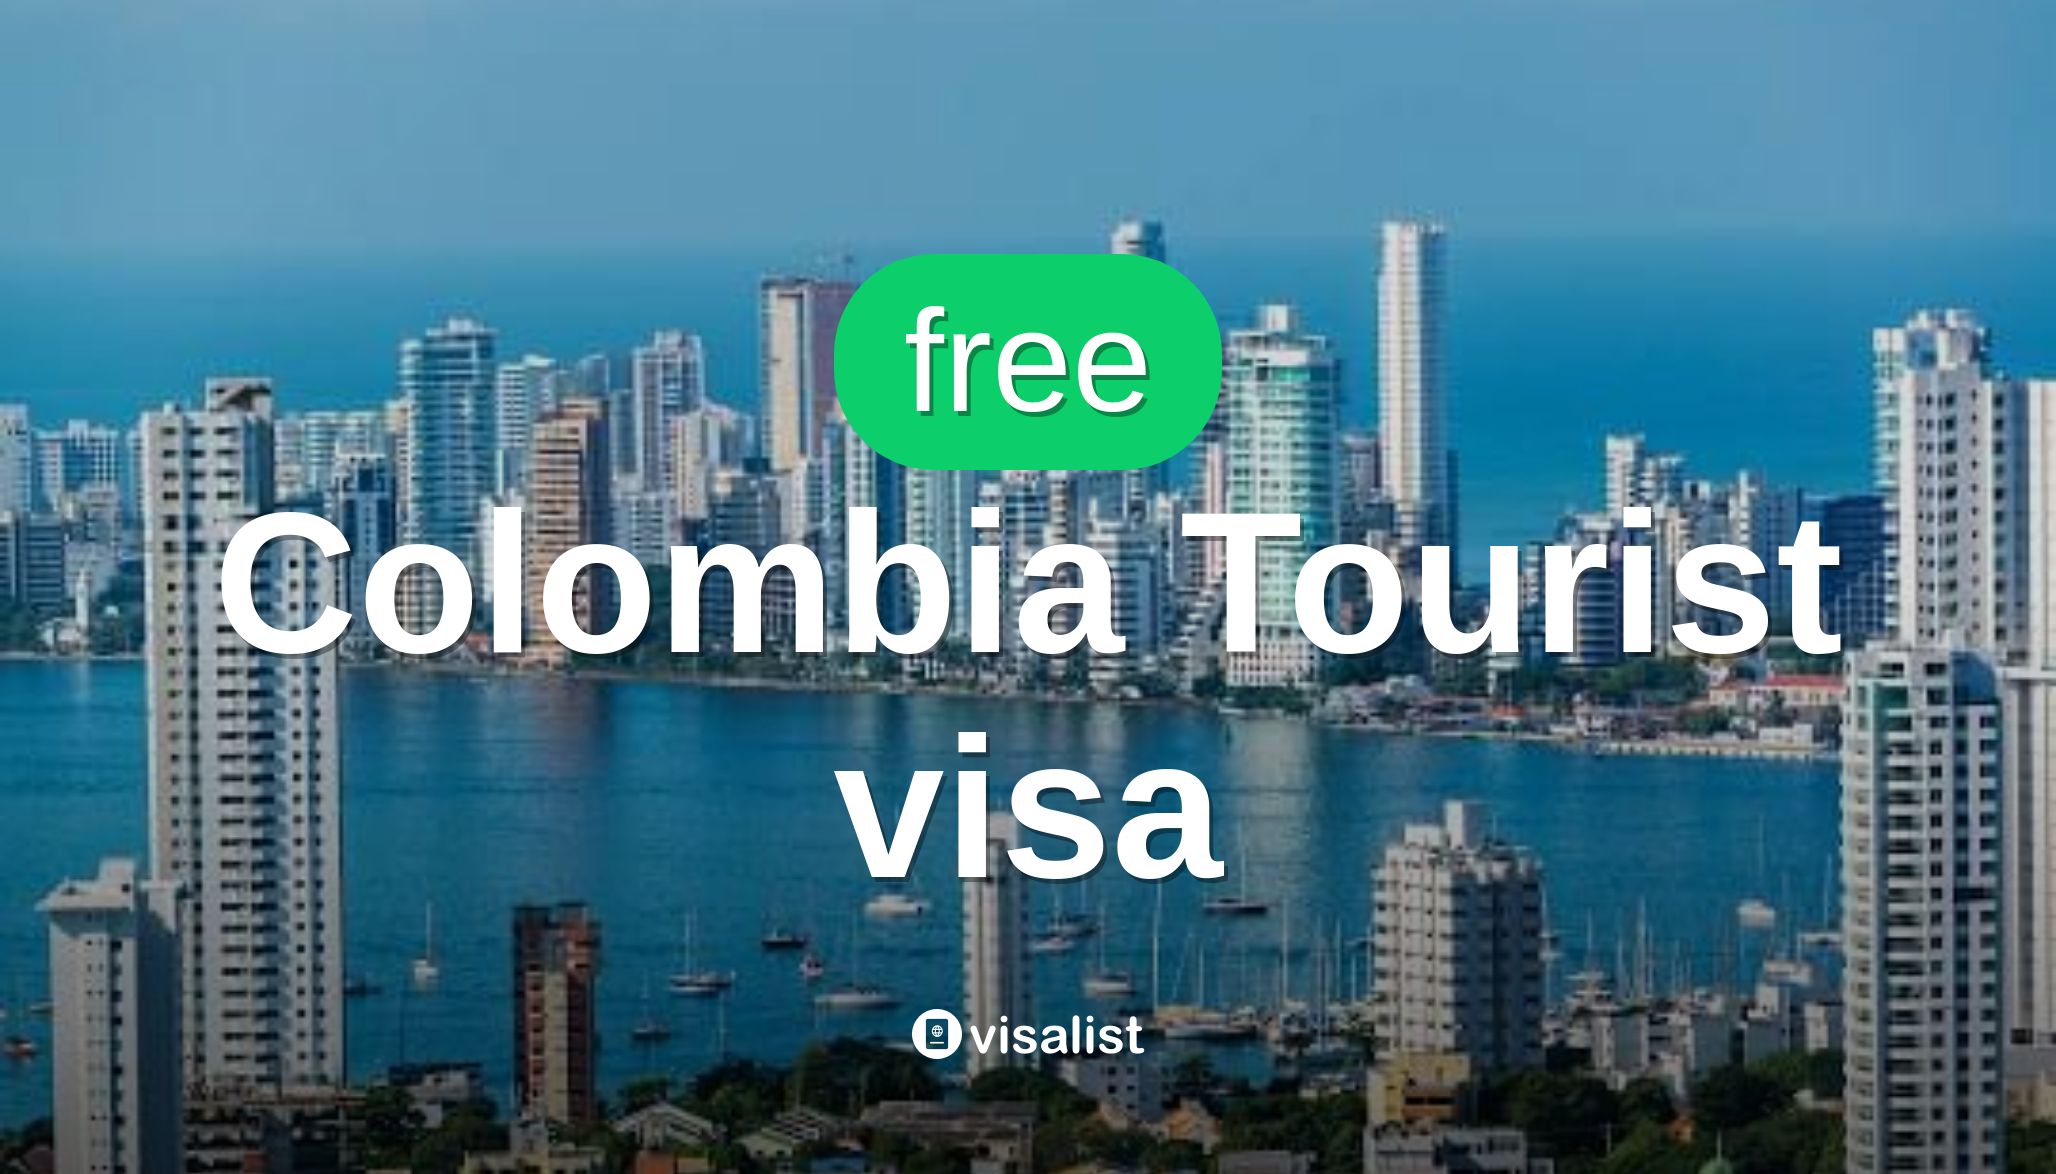 tourist visa canada colombia